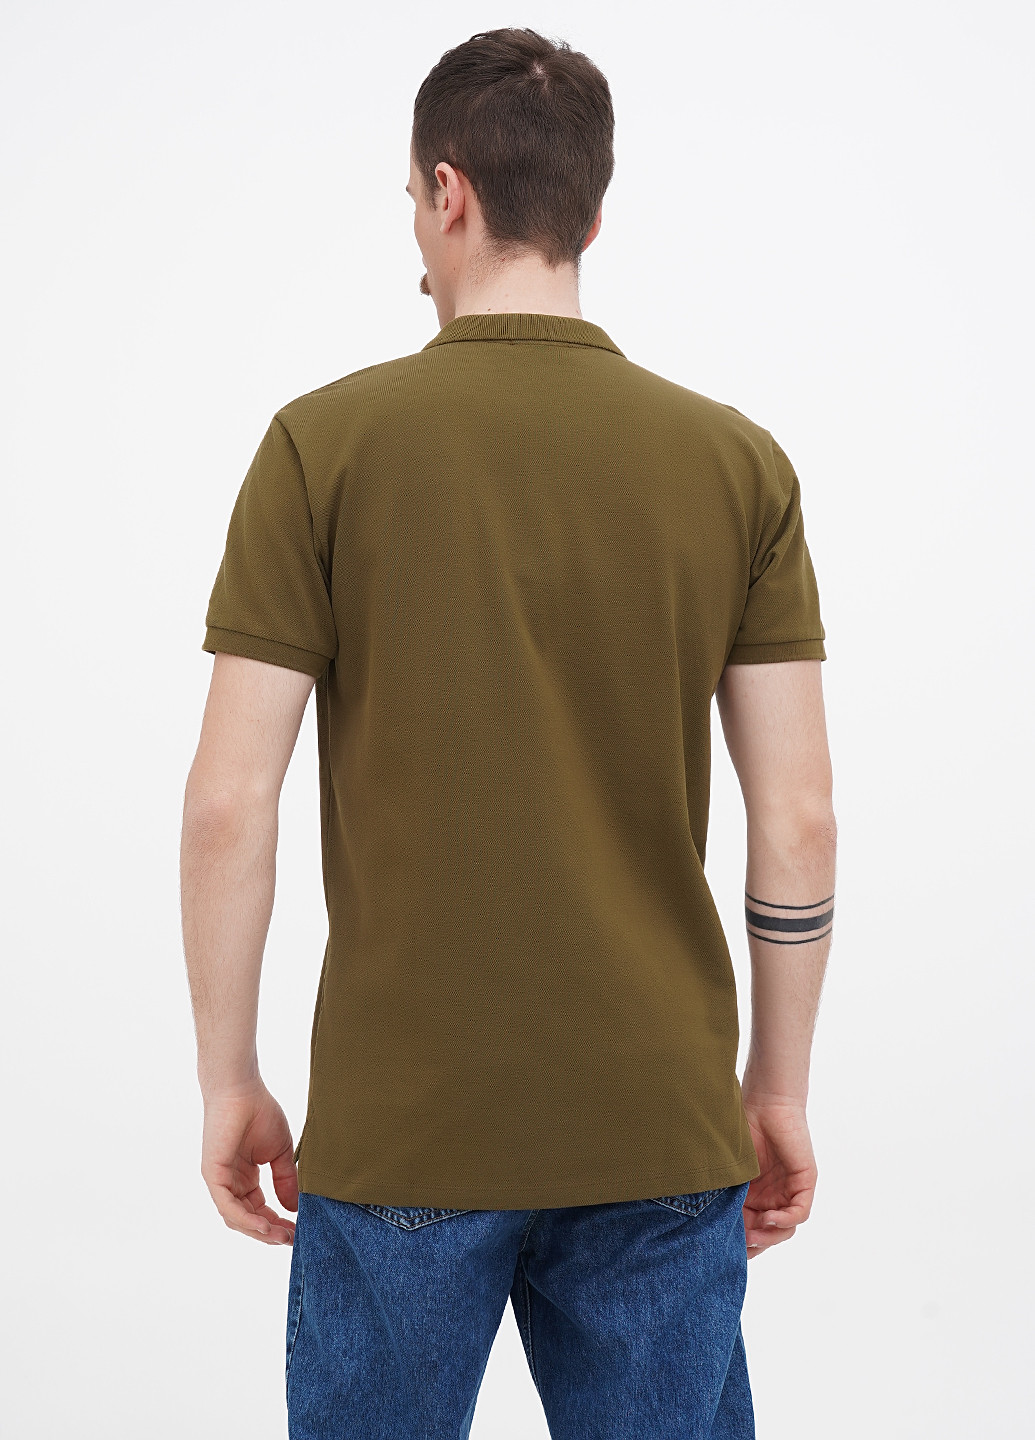 Оливковая (хаки) футболка-поло для мужчин Minimum однотонная